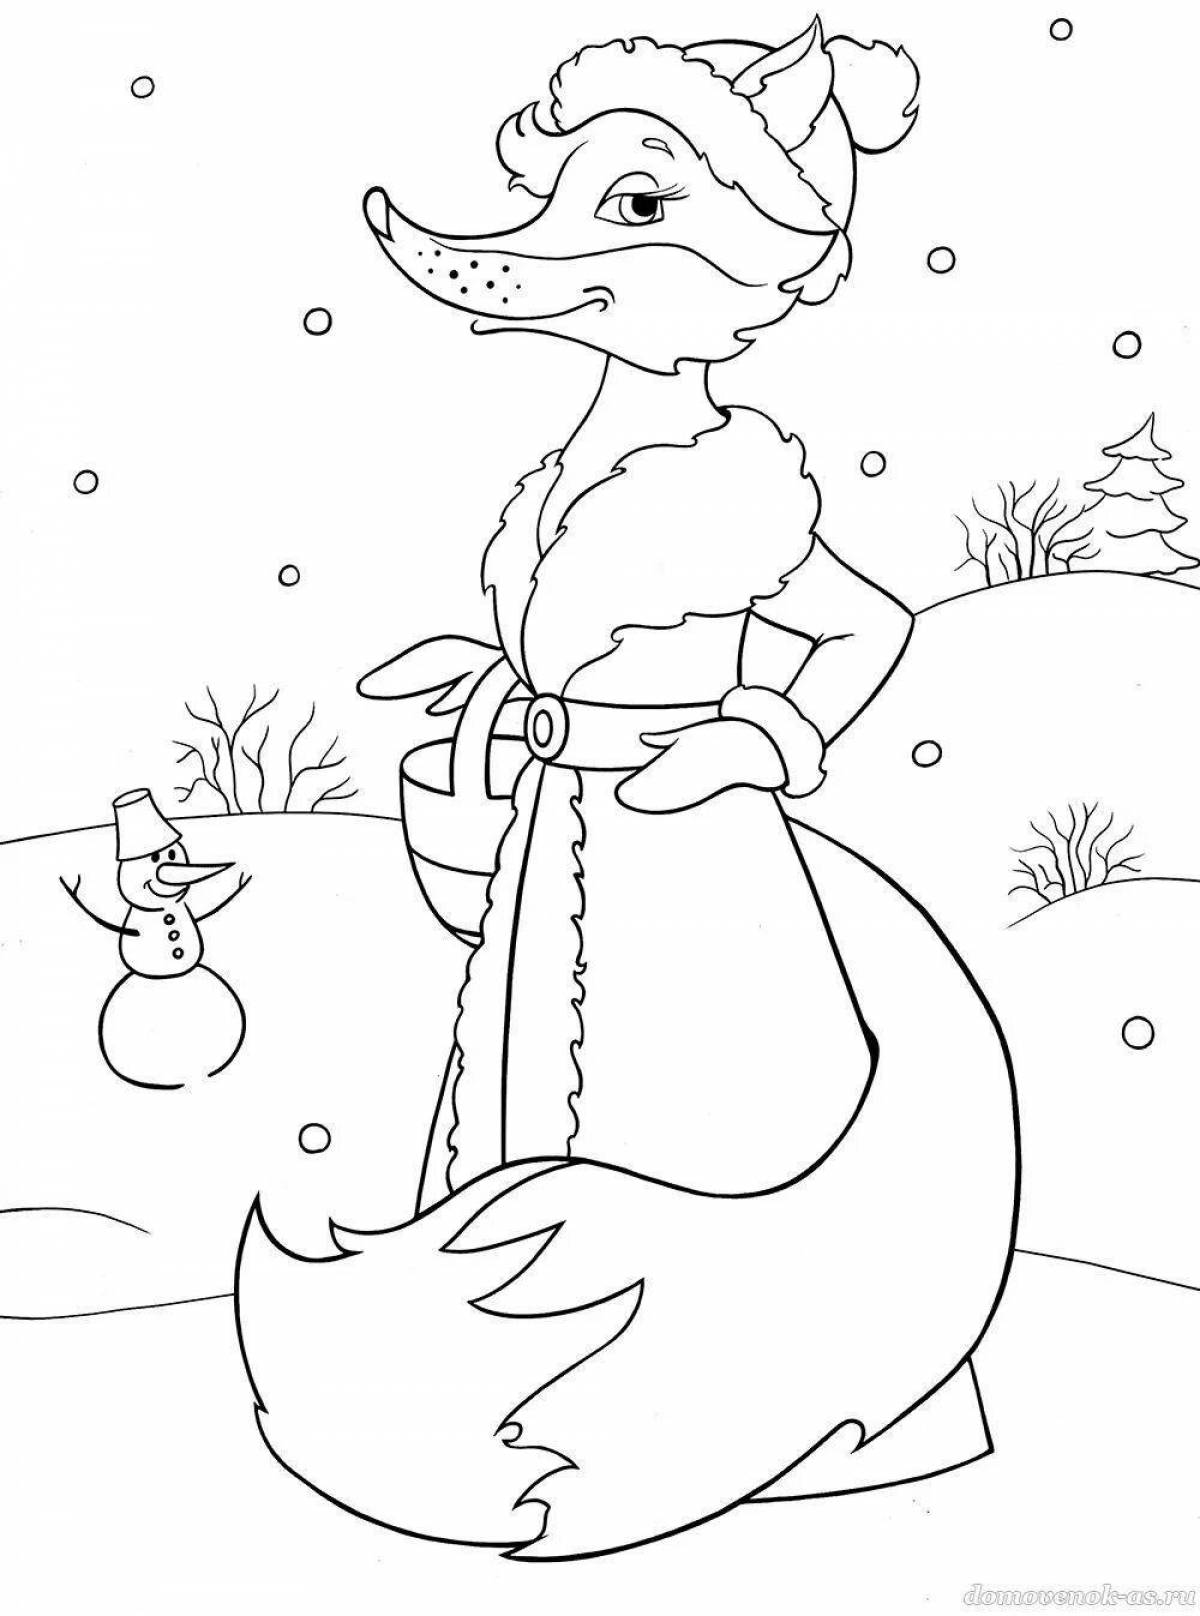 Fox in winter #3